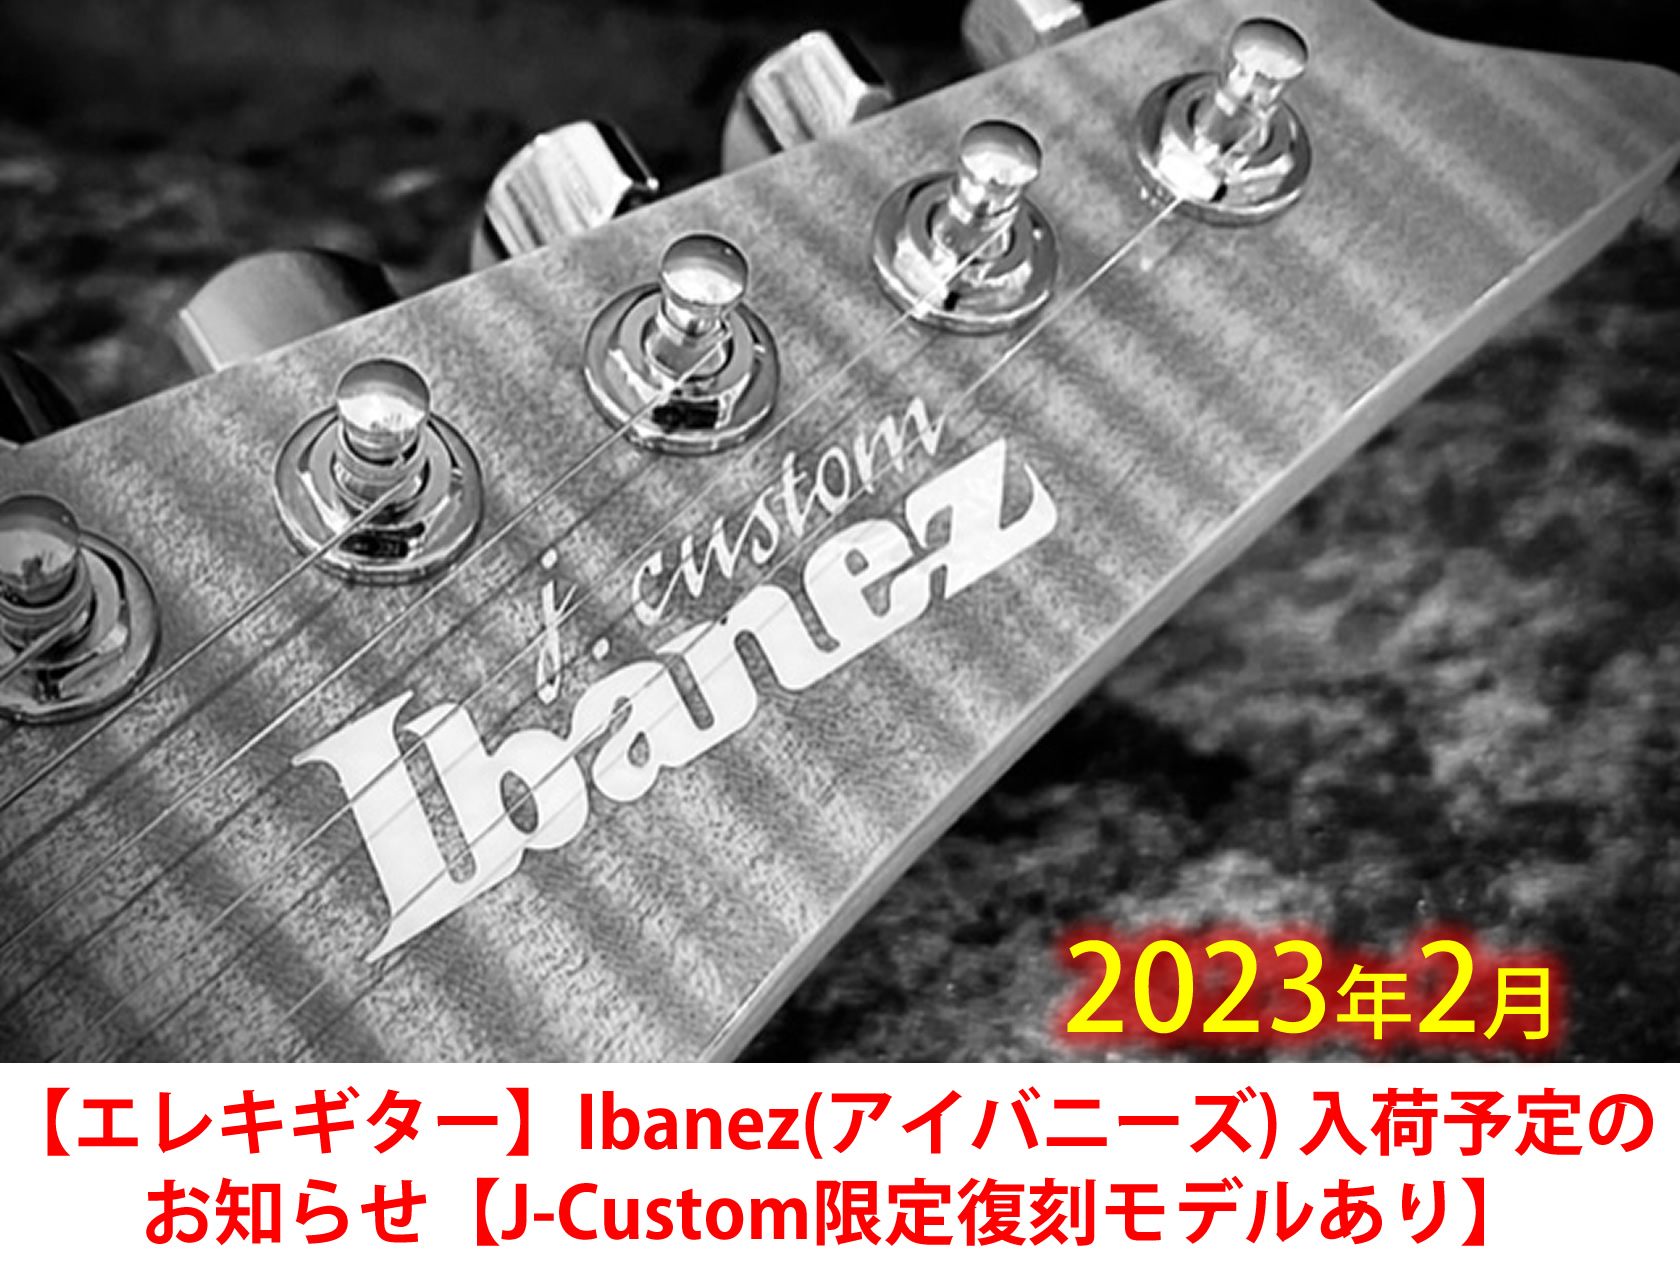 エレキギター】Ibanez(アイバニーズ) 入荷予定のお知らせ【J-Custom